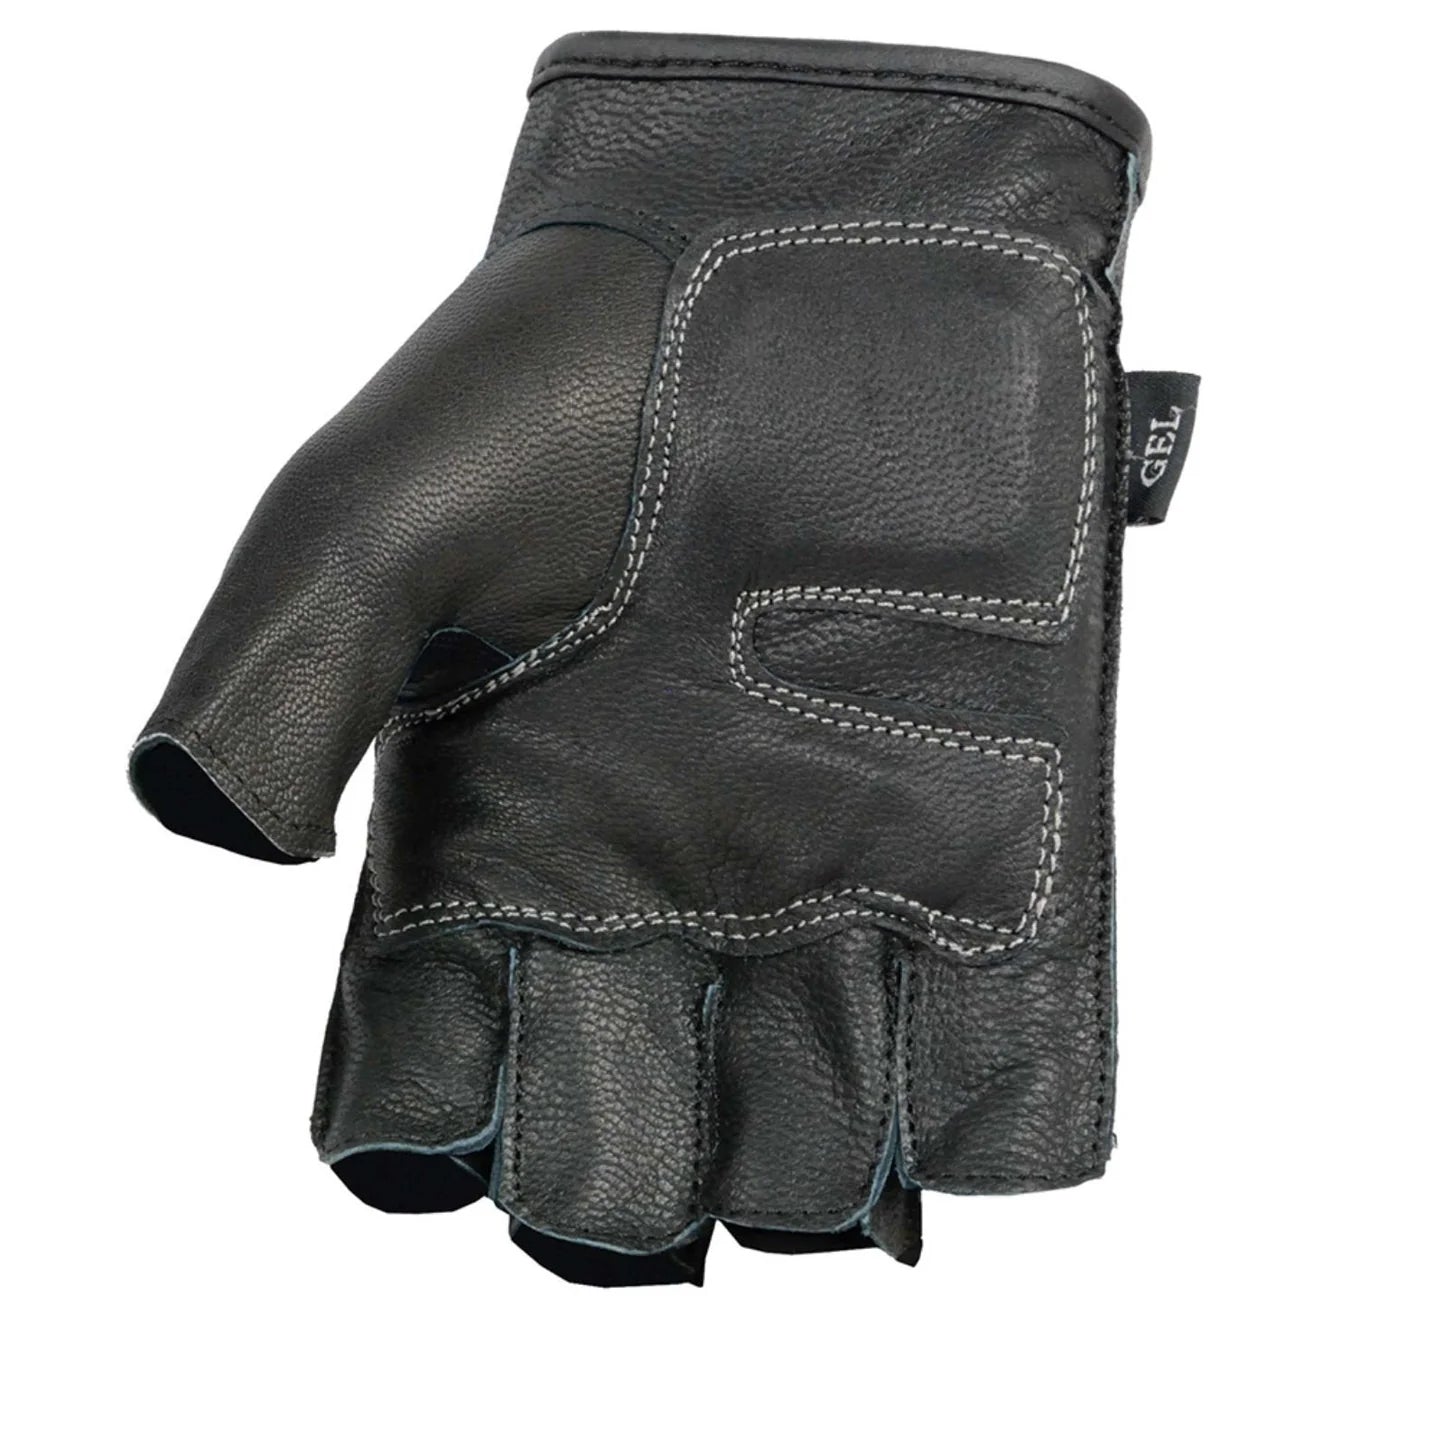 fingerless motorcycle gloves